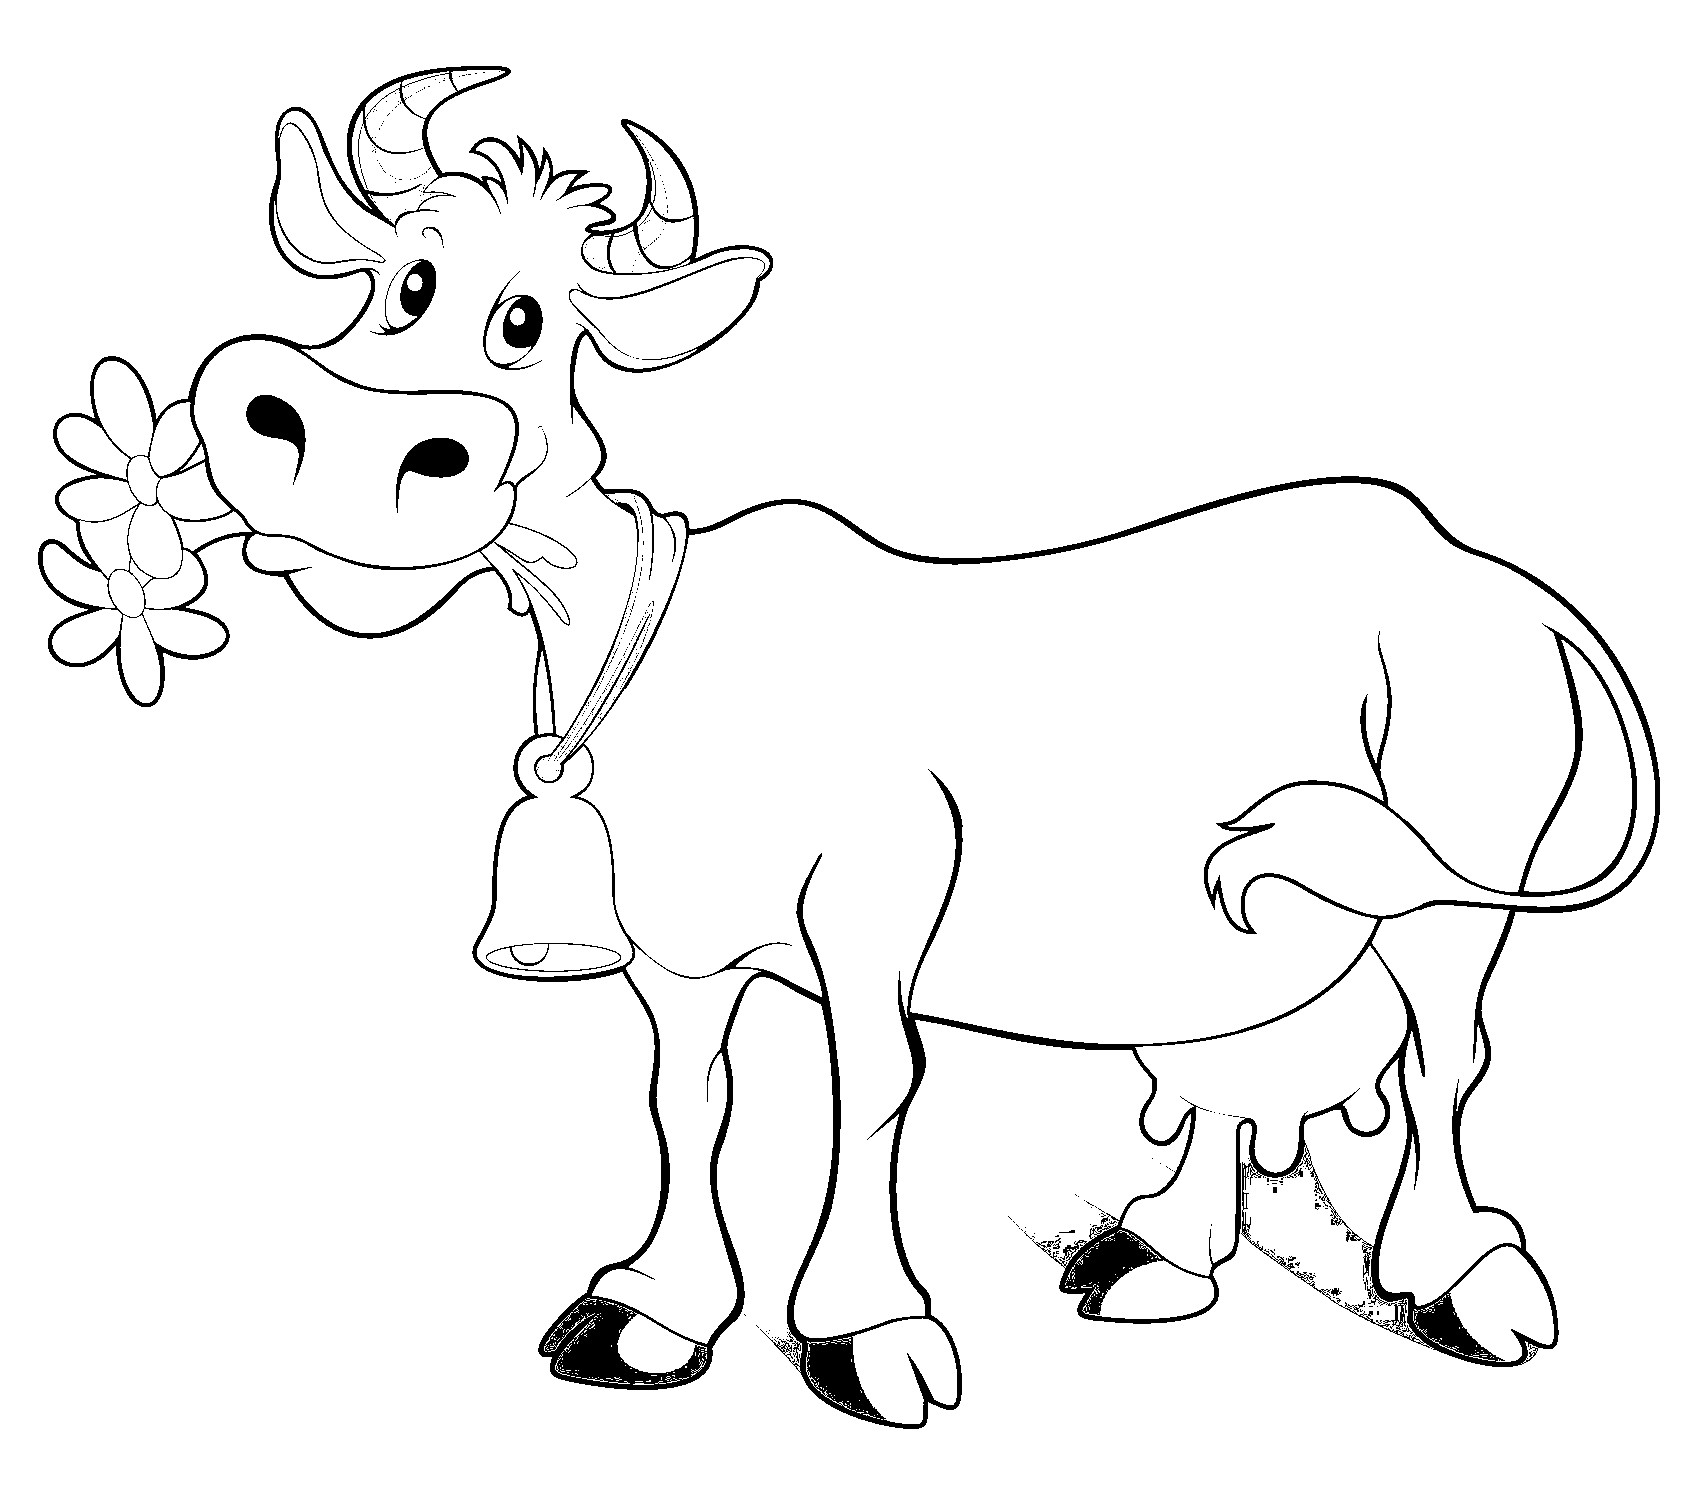 Kleurplaat van koe in cartoonstijl